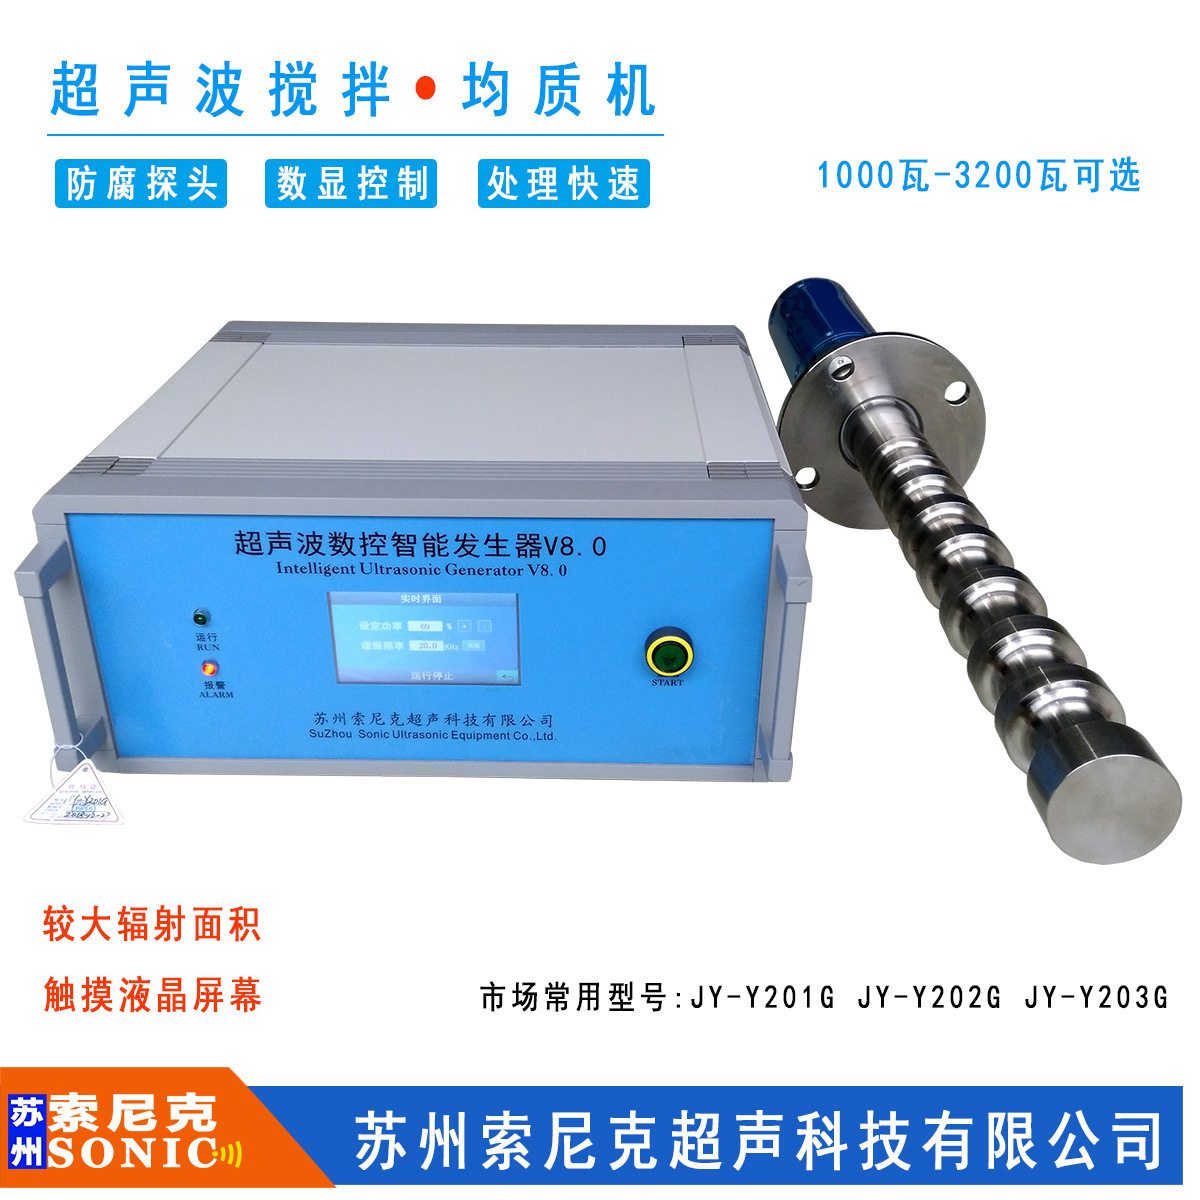 广州超声波选矿设备参数;西安超声波矿浆液预处理分散设备图片